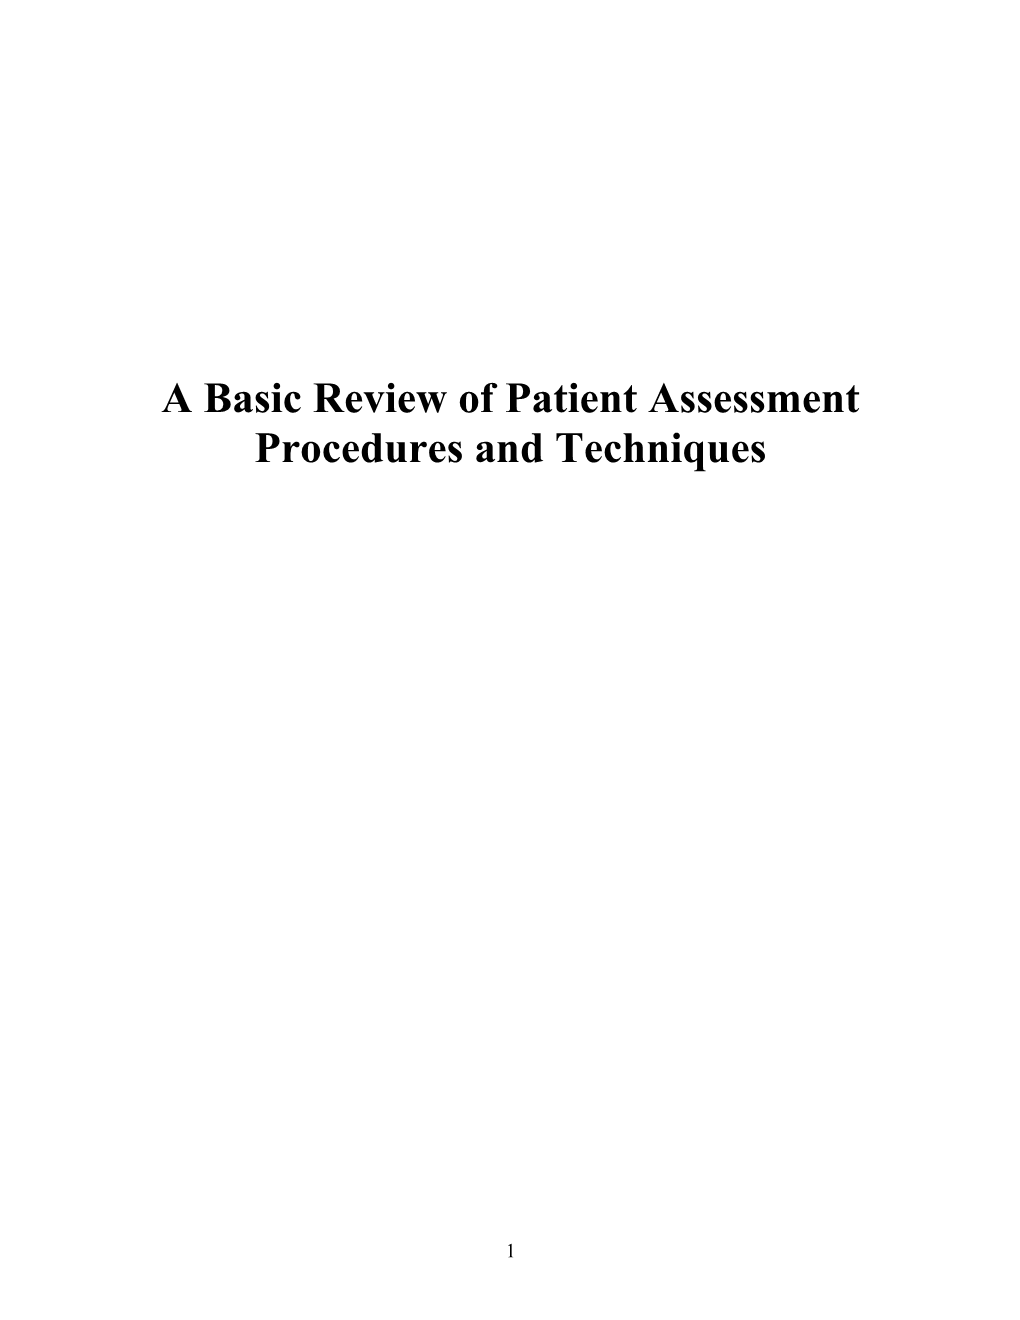 Patient Assessment: a Review